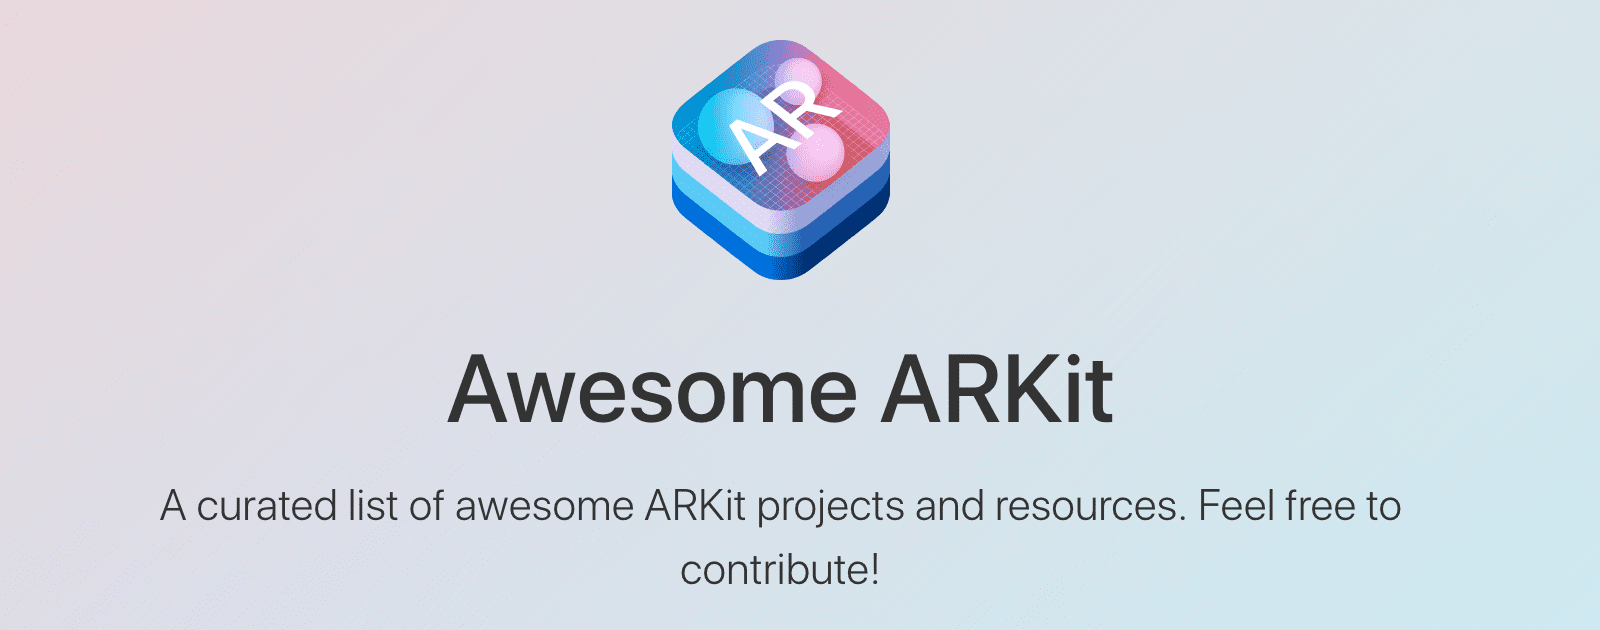 Awesome ARKit es una gran lista de proyectos y recursos de ARKit